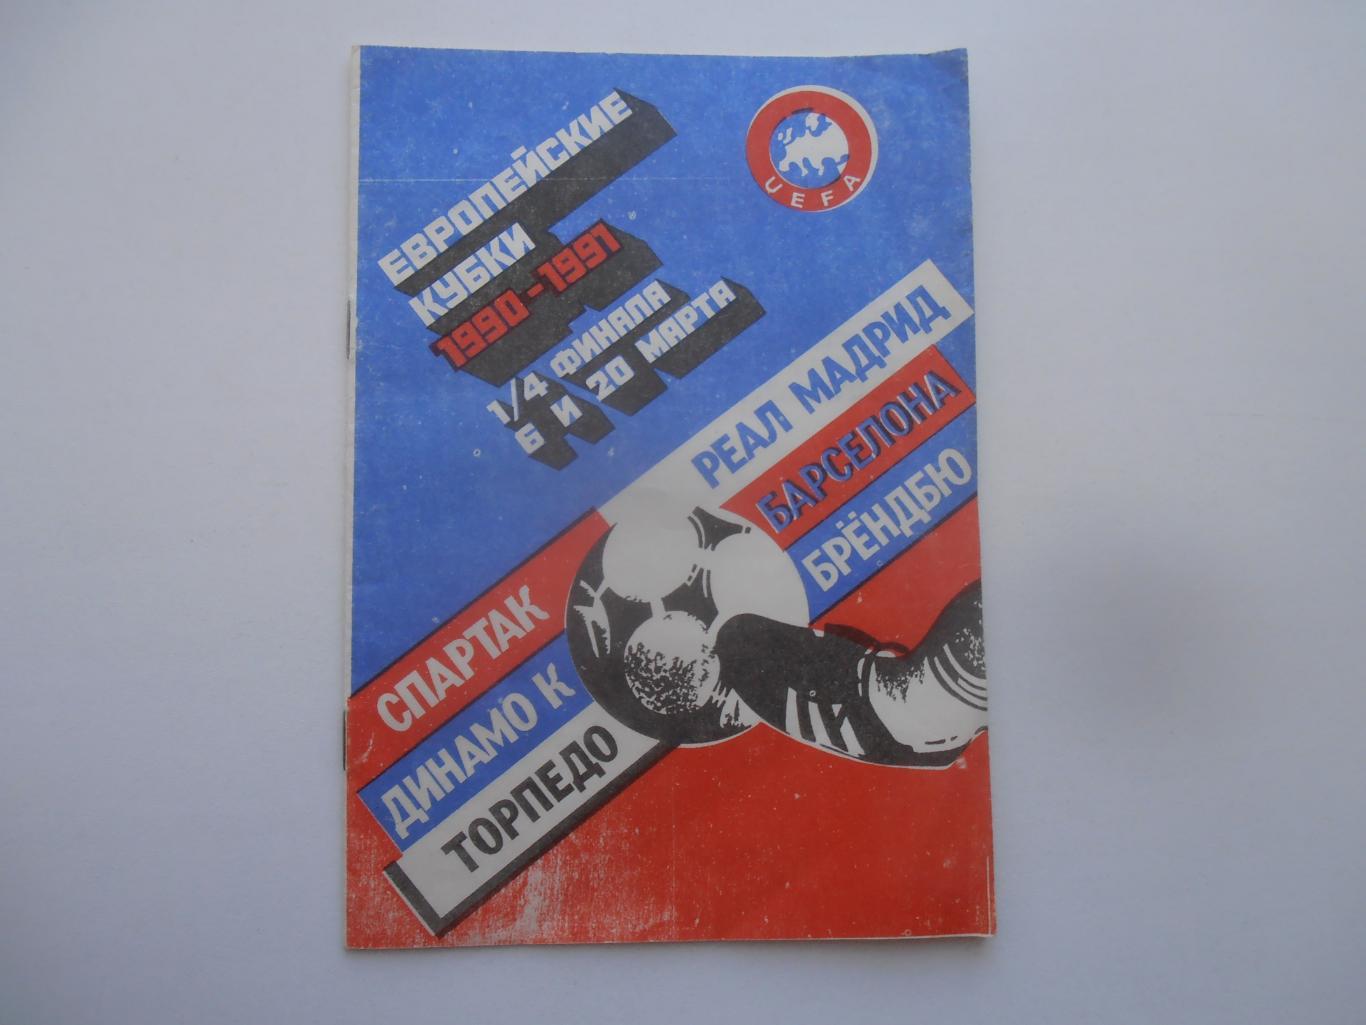 1990-1991 1/4 финала Спартак и Торпедо Москва,Динамо Киев